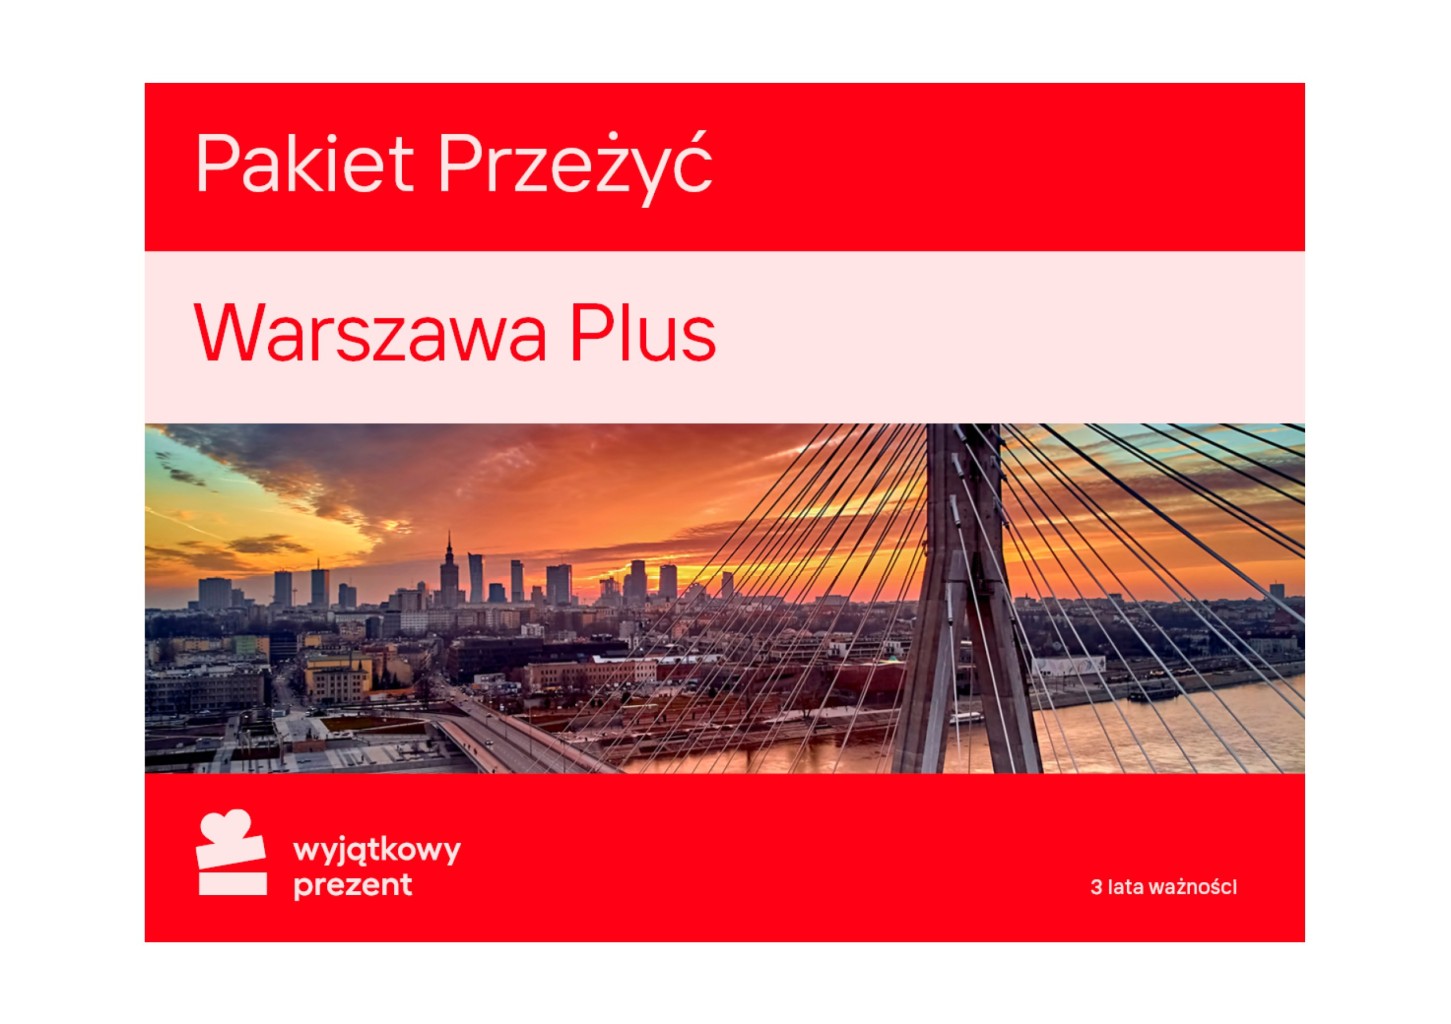 Pakiet Przeżyć "Warszawa Plus"